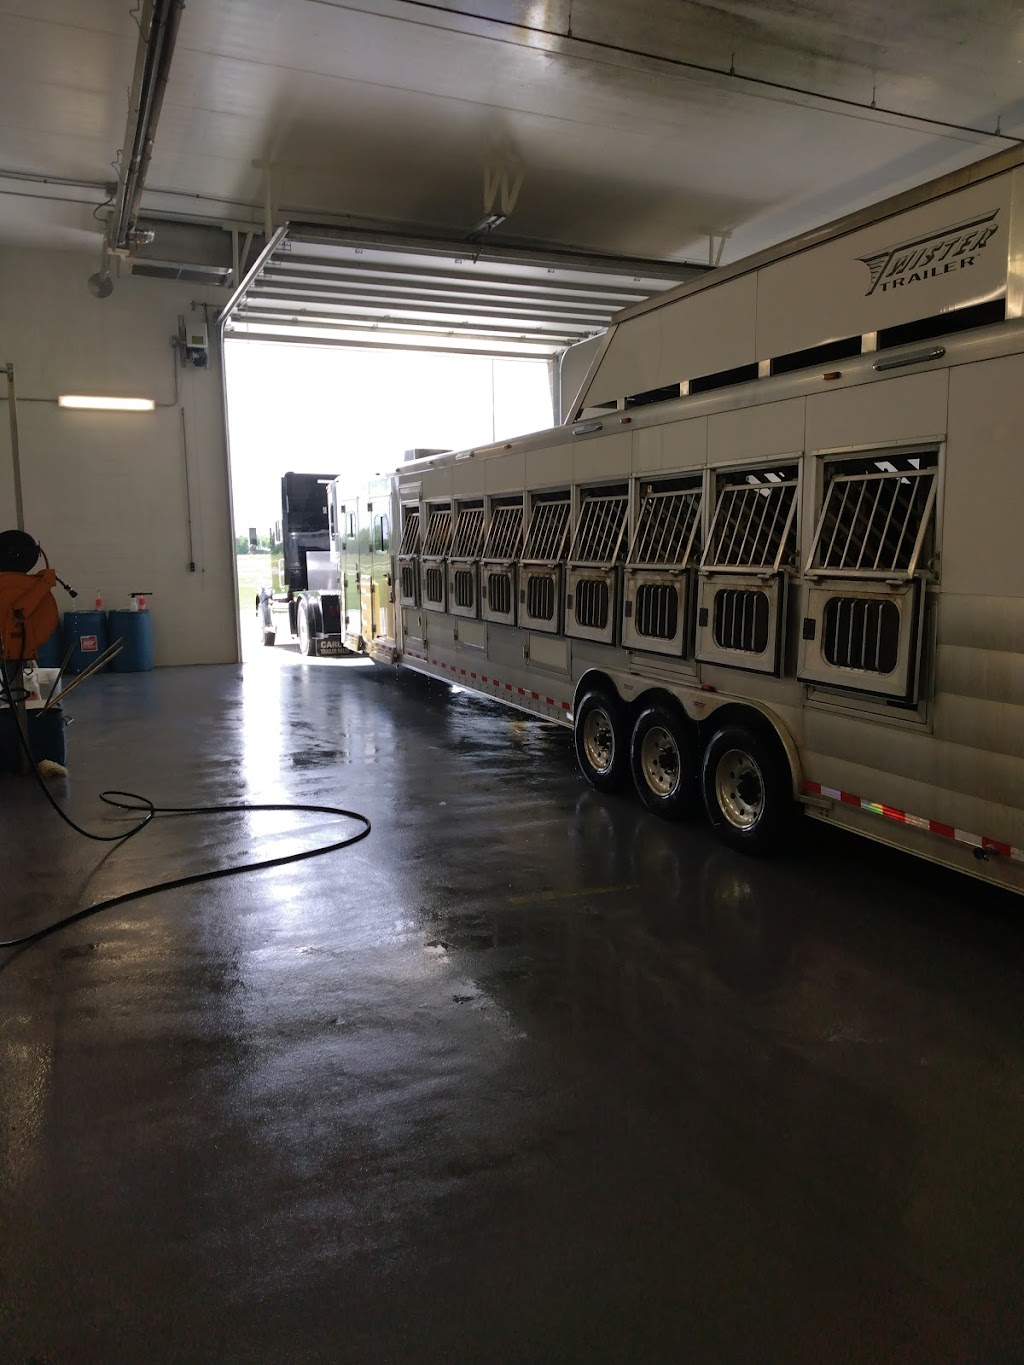 Berts Truck Wash | 1023 Poplar St, Wellsville, KS 66092 | Phone: (785) 816-7006